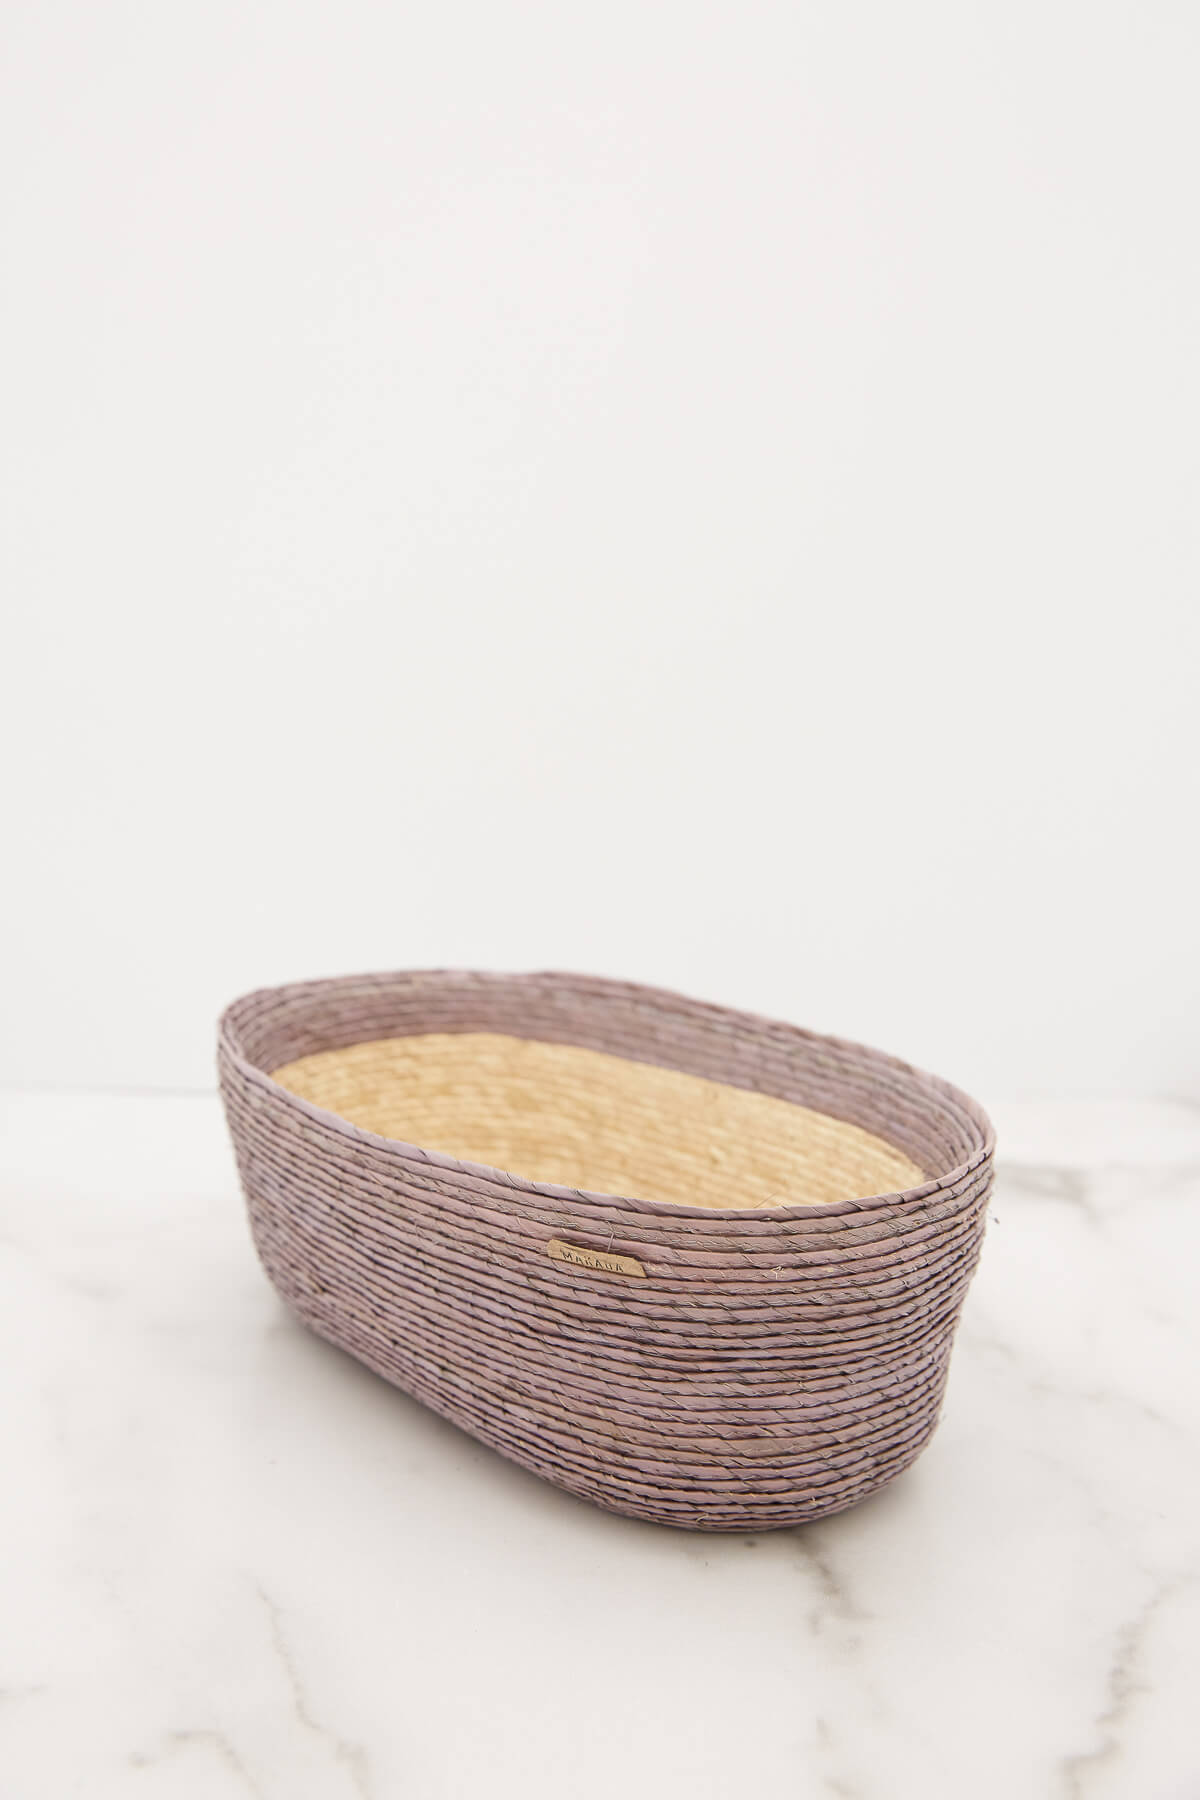 Makaua Small Oval Basket